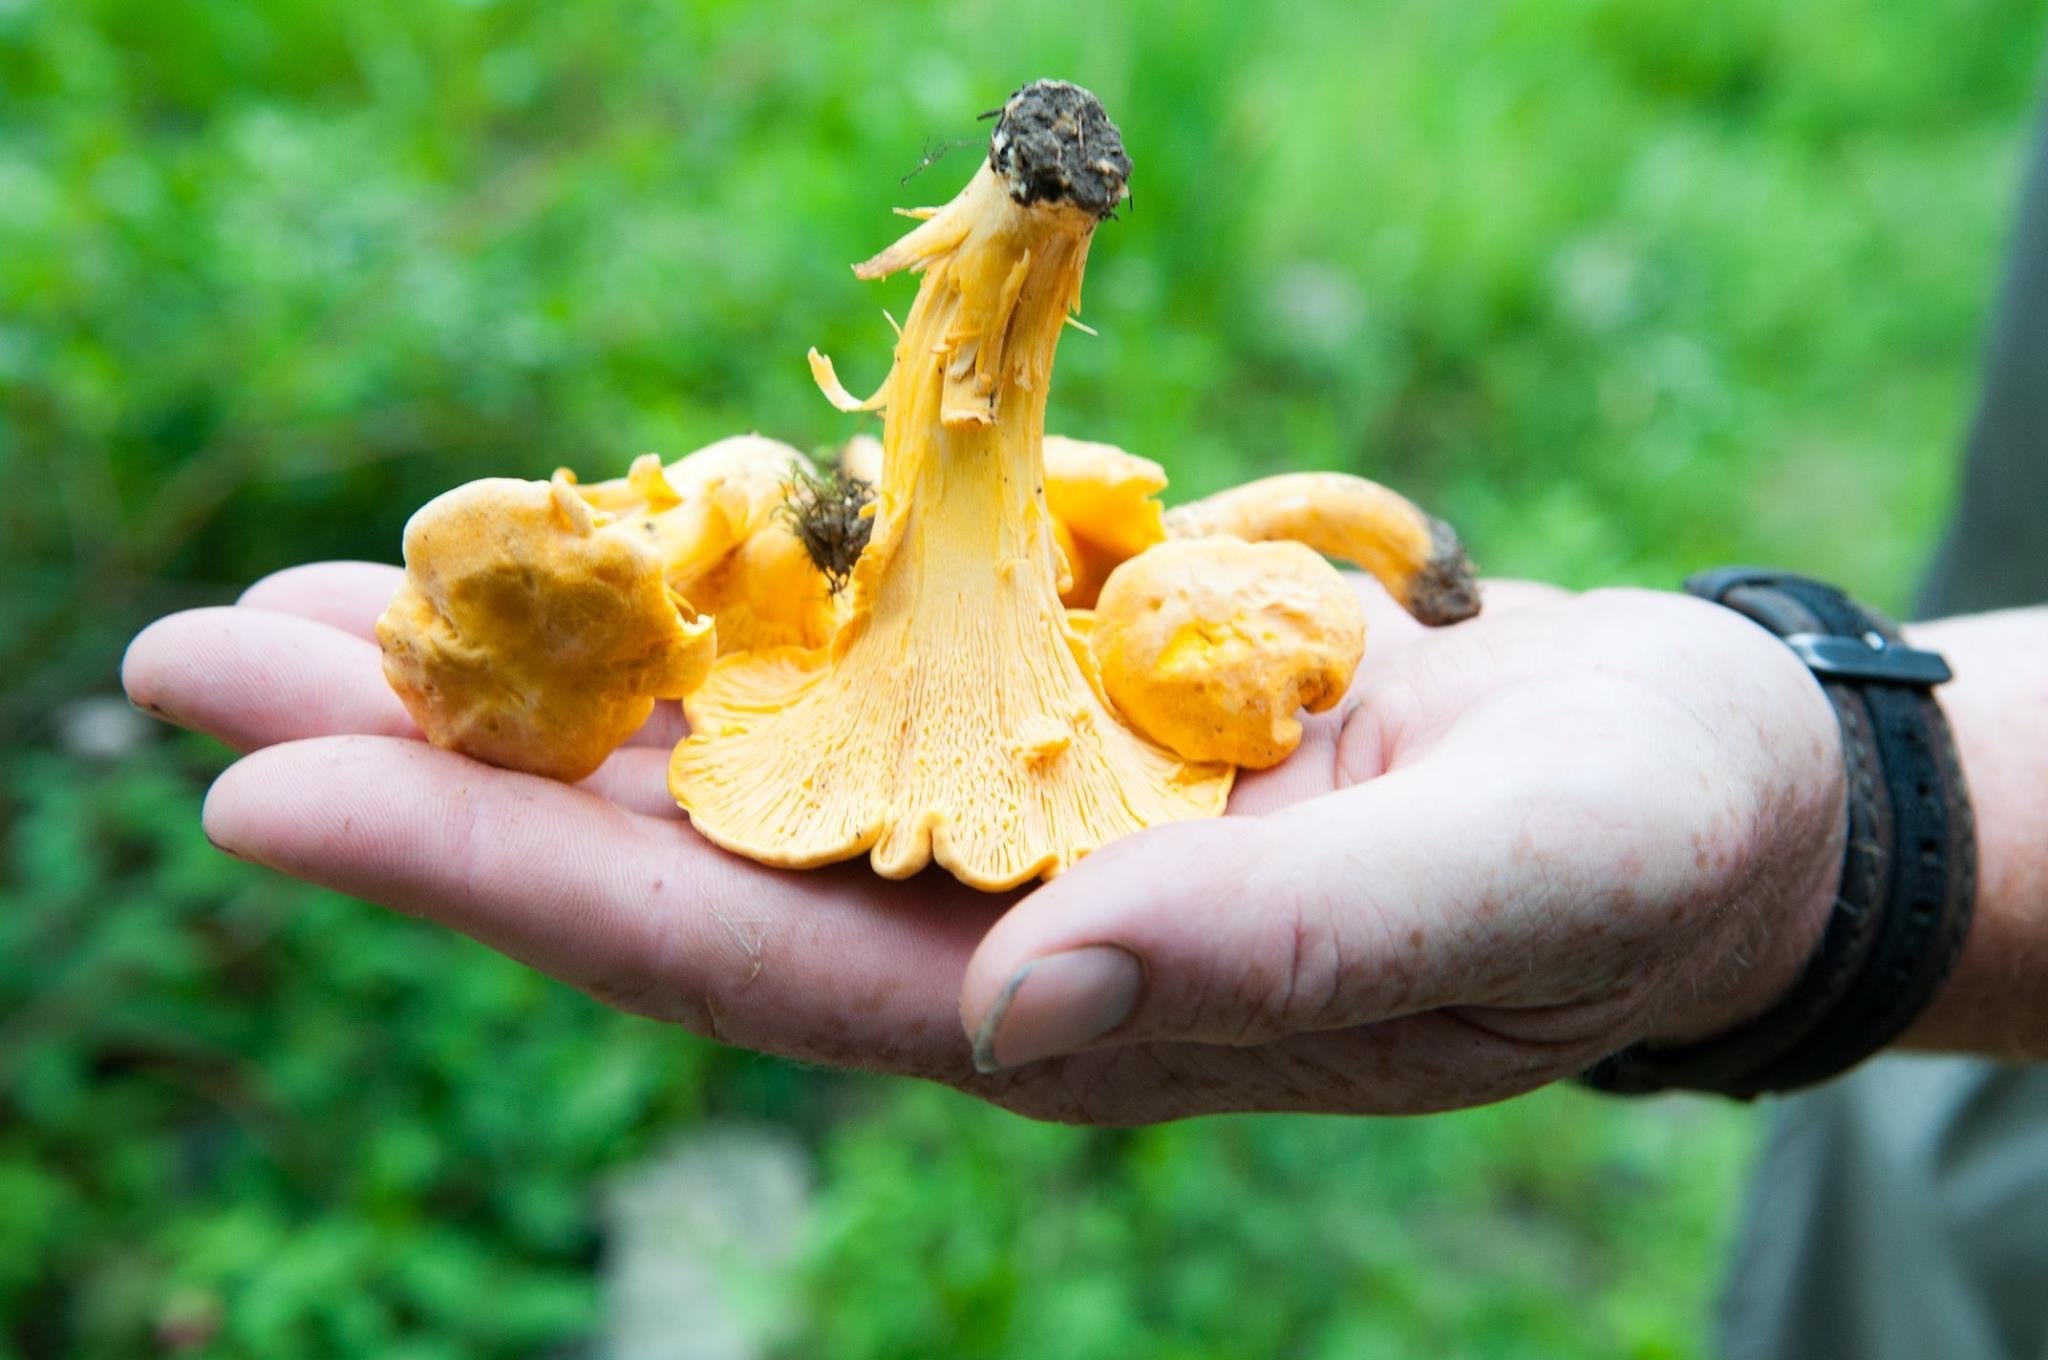 A golden chanterelle mushroom